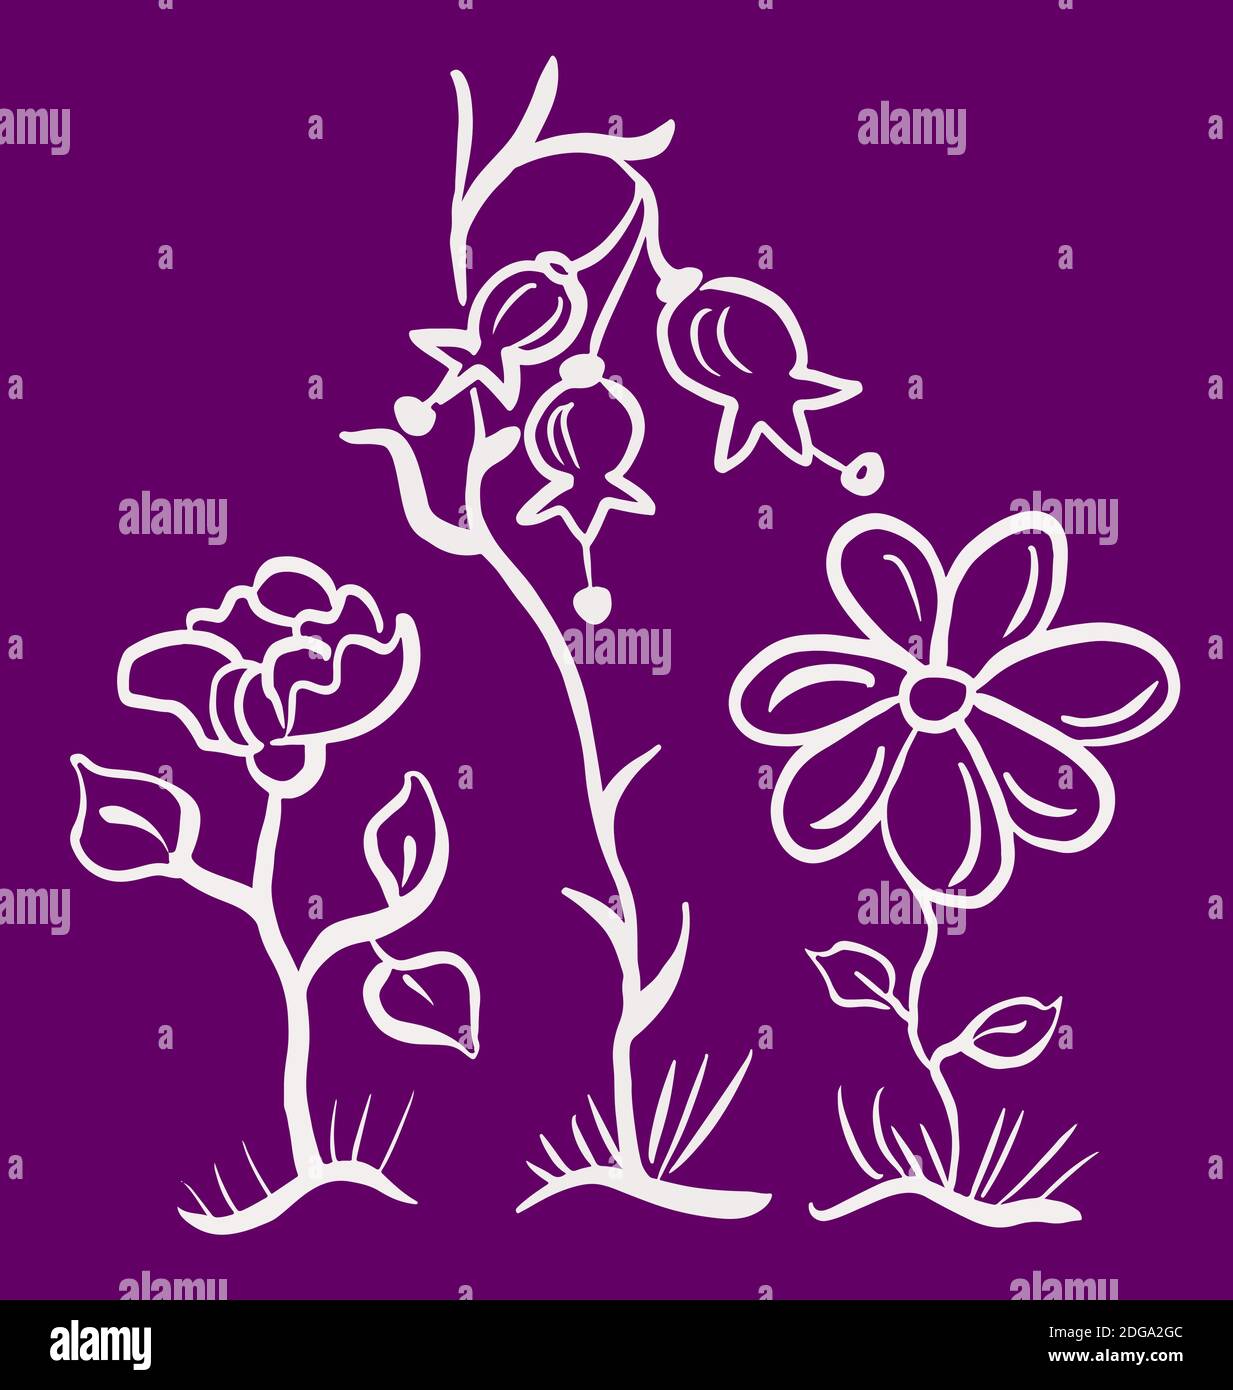 Drei handgezeichnete Kontur Blumen, Glocke, Rose, Gänseblümchen, isolierte Konturen eps10 vecror Illustration. Stock Vektor